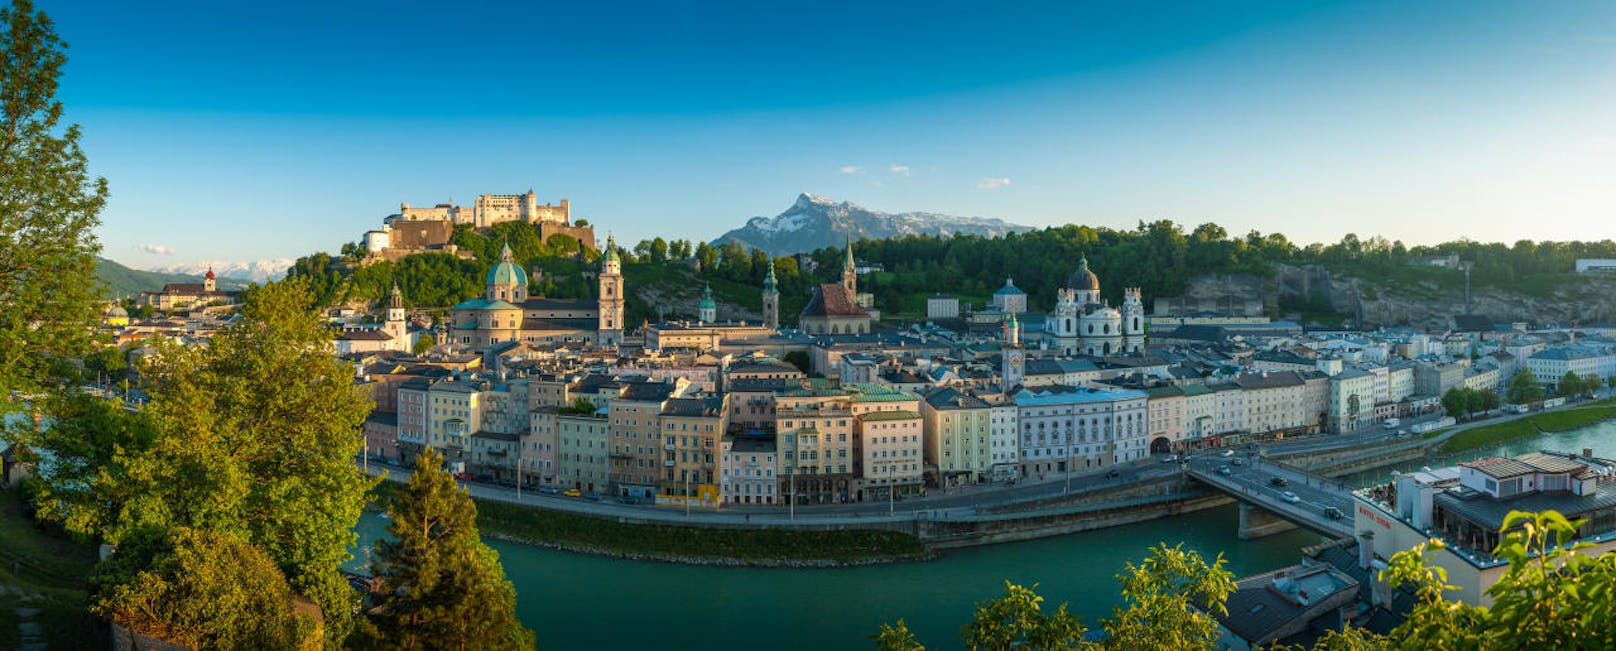 Wer sie besteigt, wird mit einem atemberaubenden Blick auf die Stadt belohnt.
(Blick vom Kapuzinerberg auf die Salzburger Altstadt und auf die Festung Hohensalzburg)